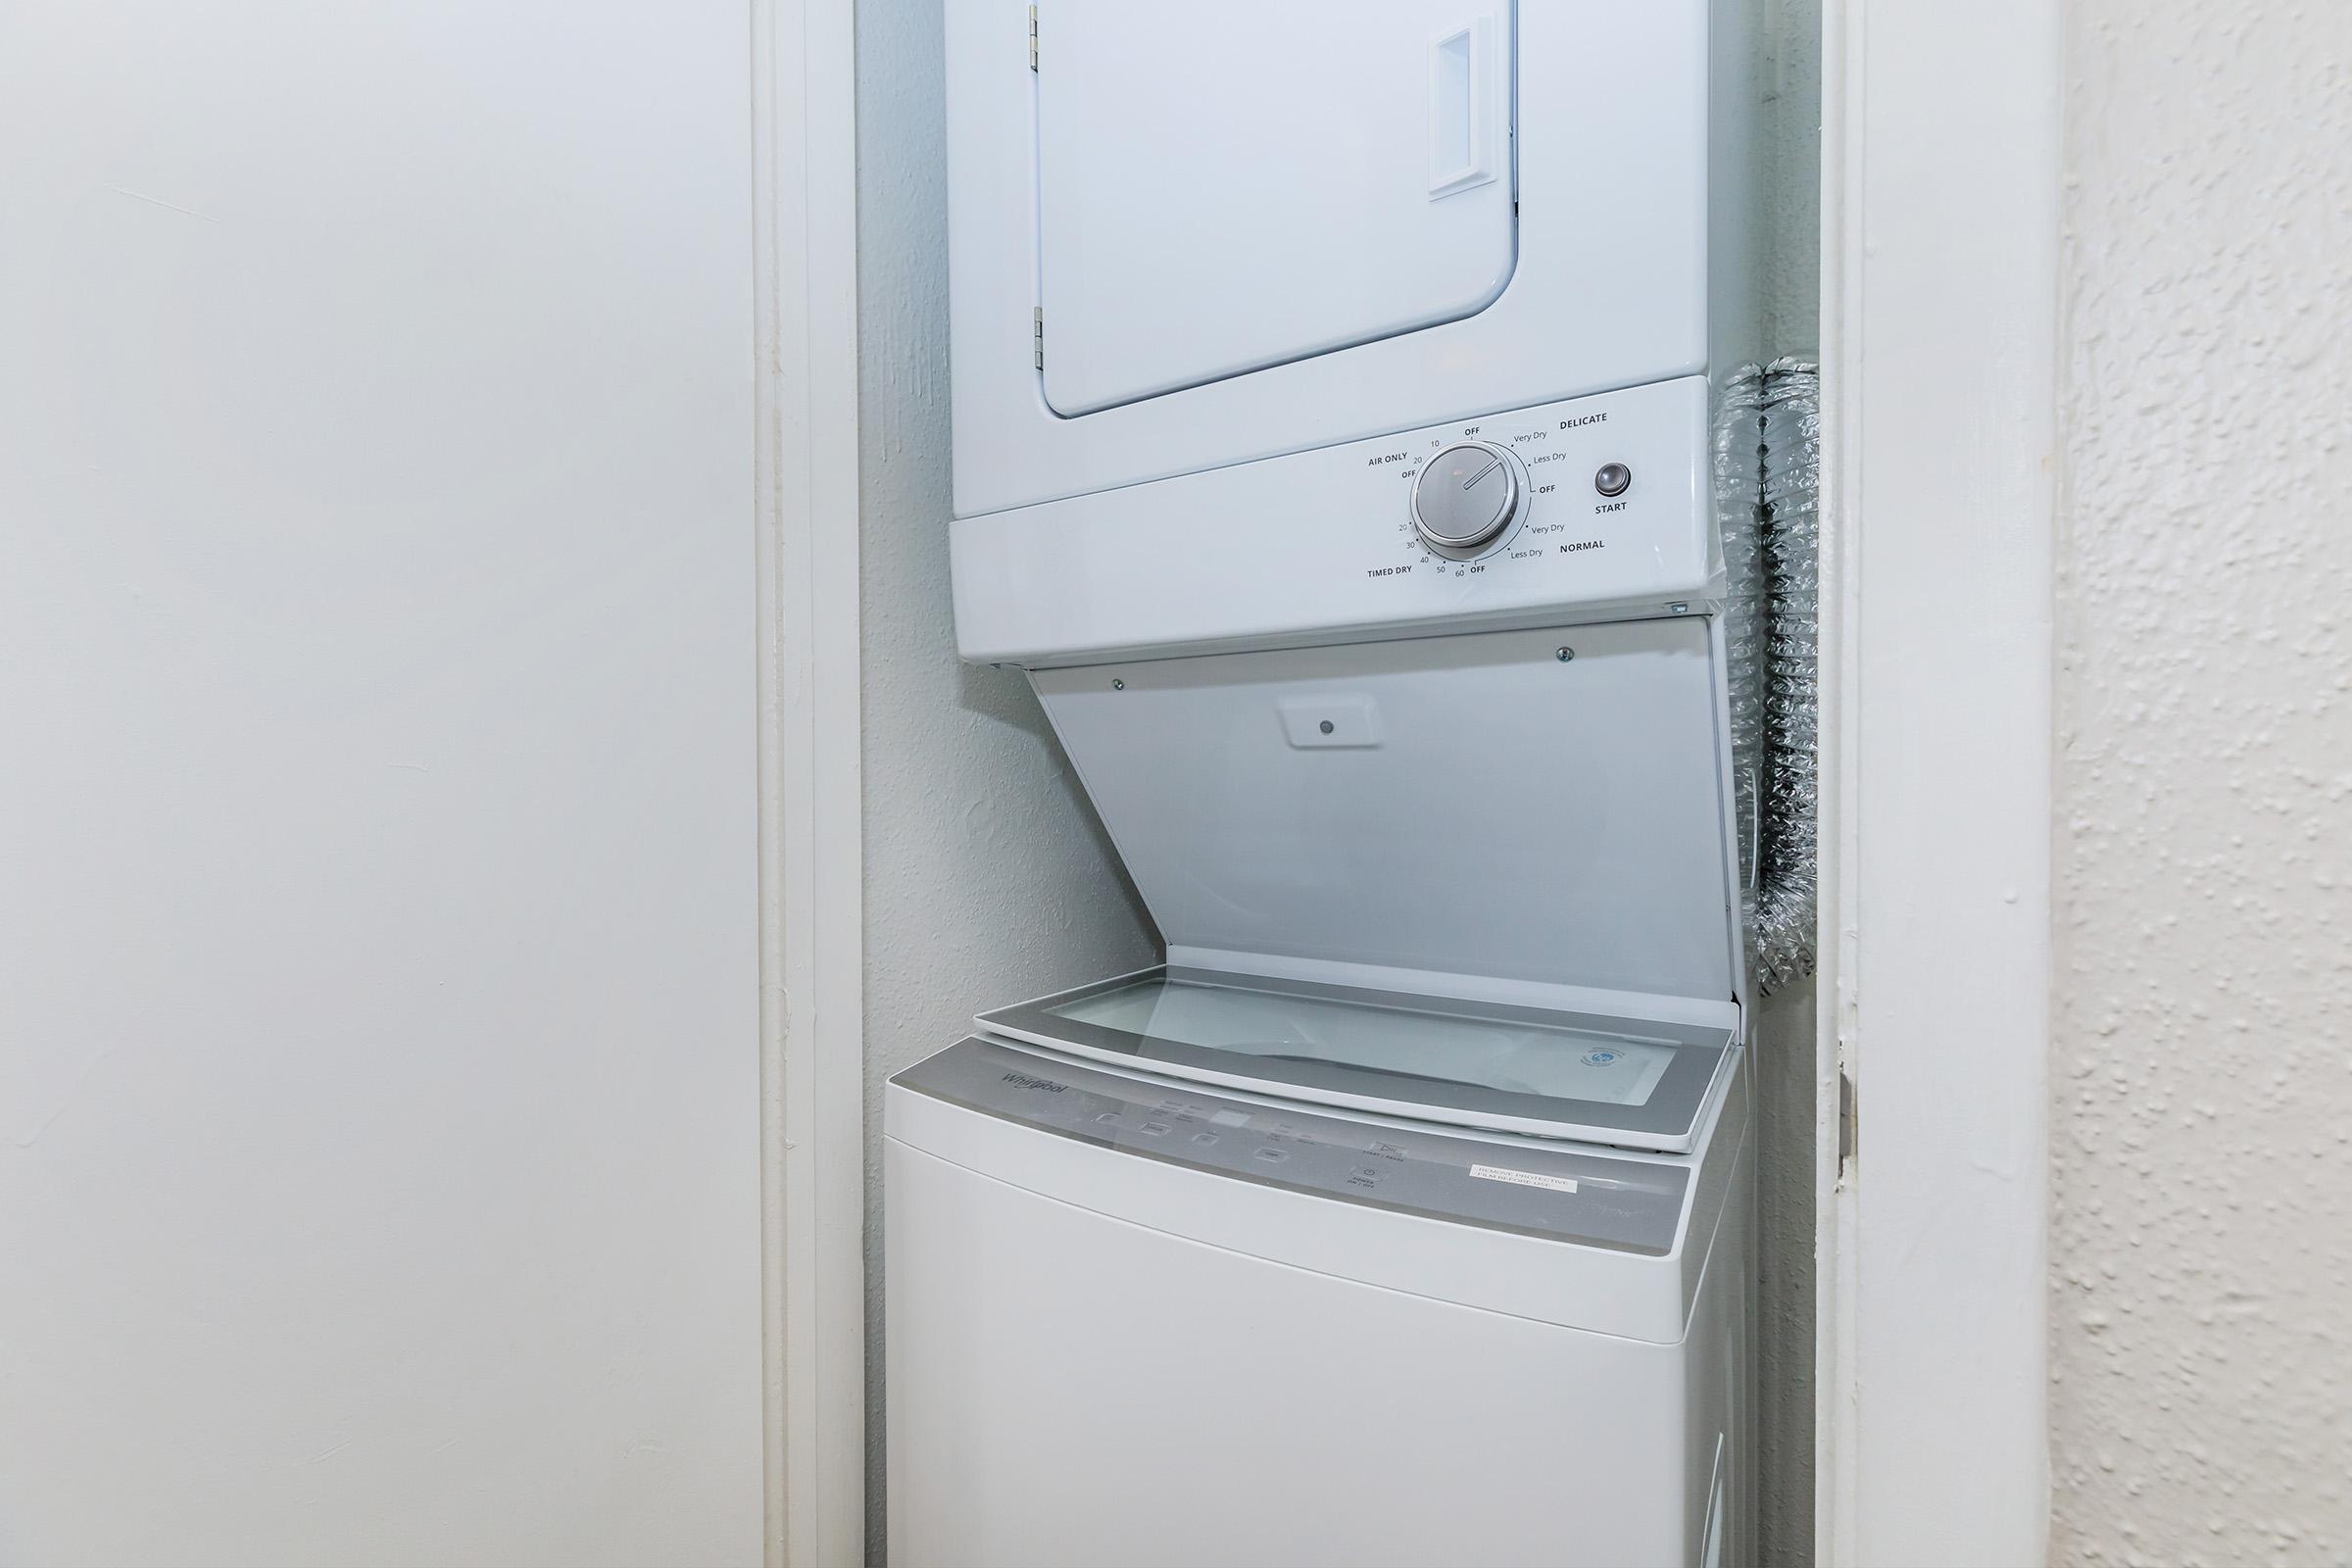 a close up of a refrigerator